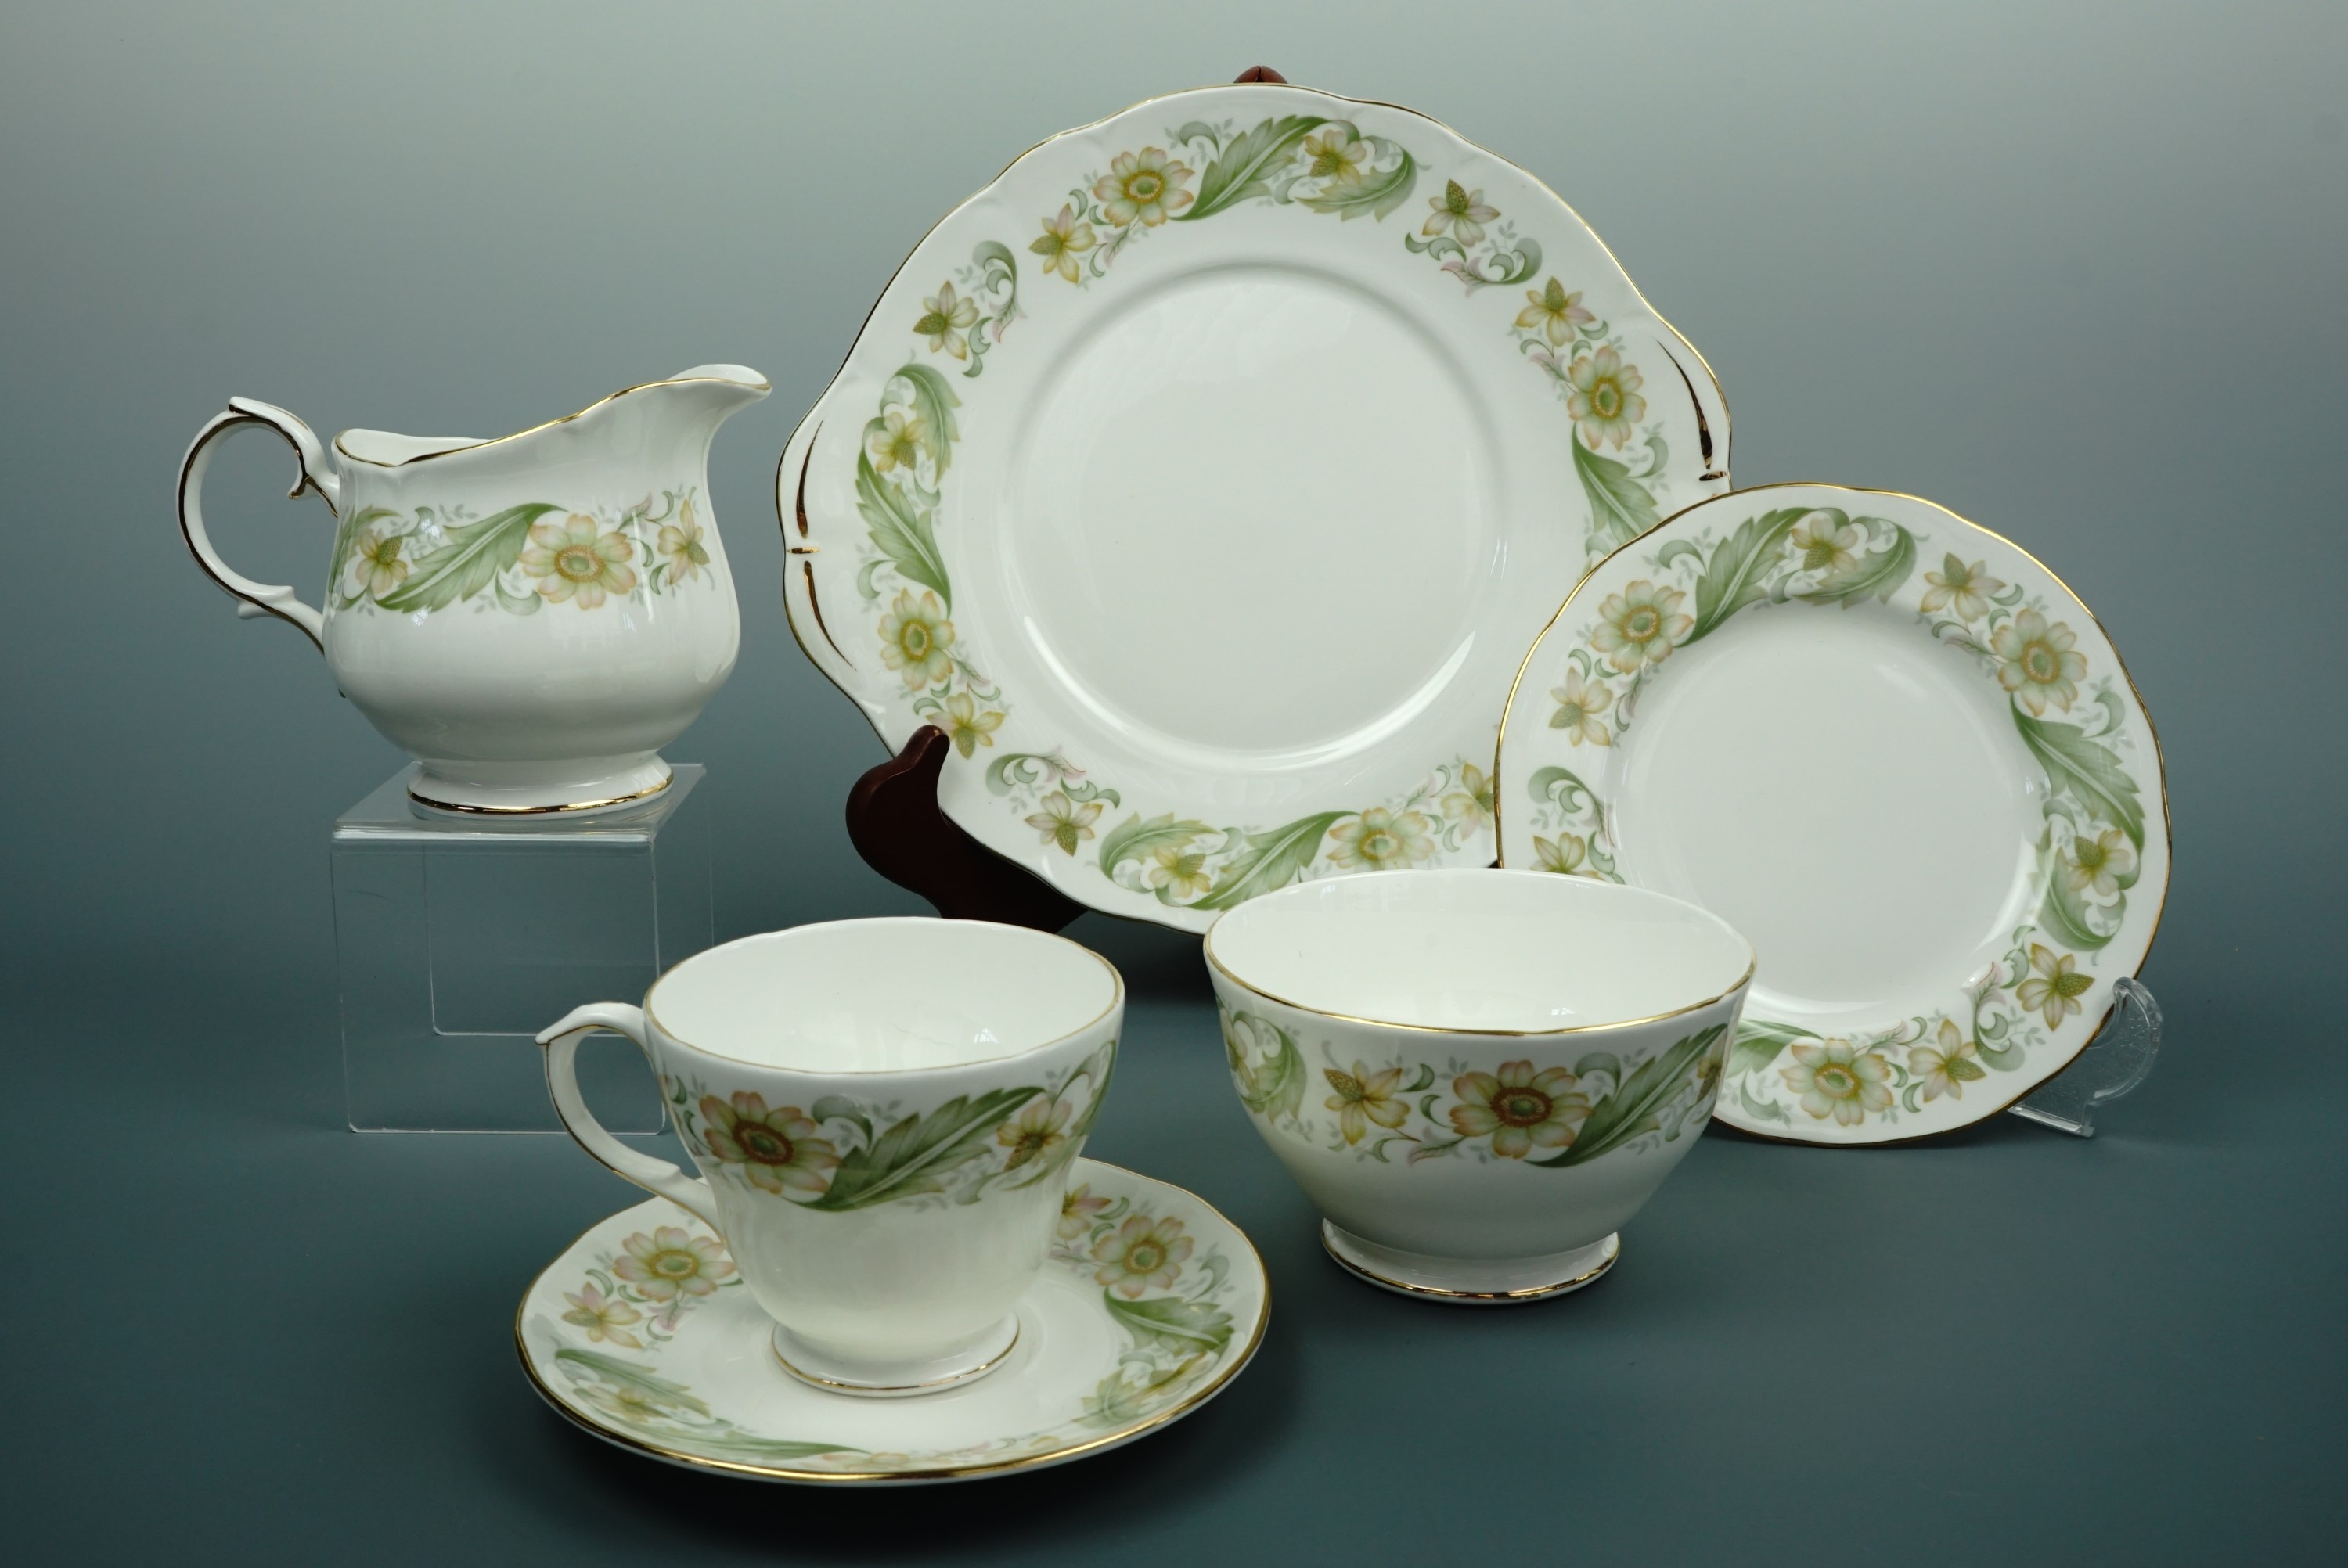 A Duchess "Green Sleeves" pattern tea set